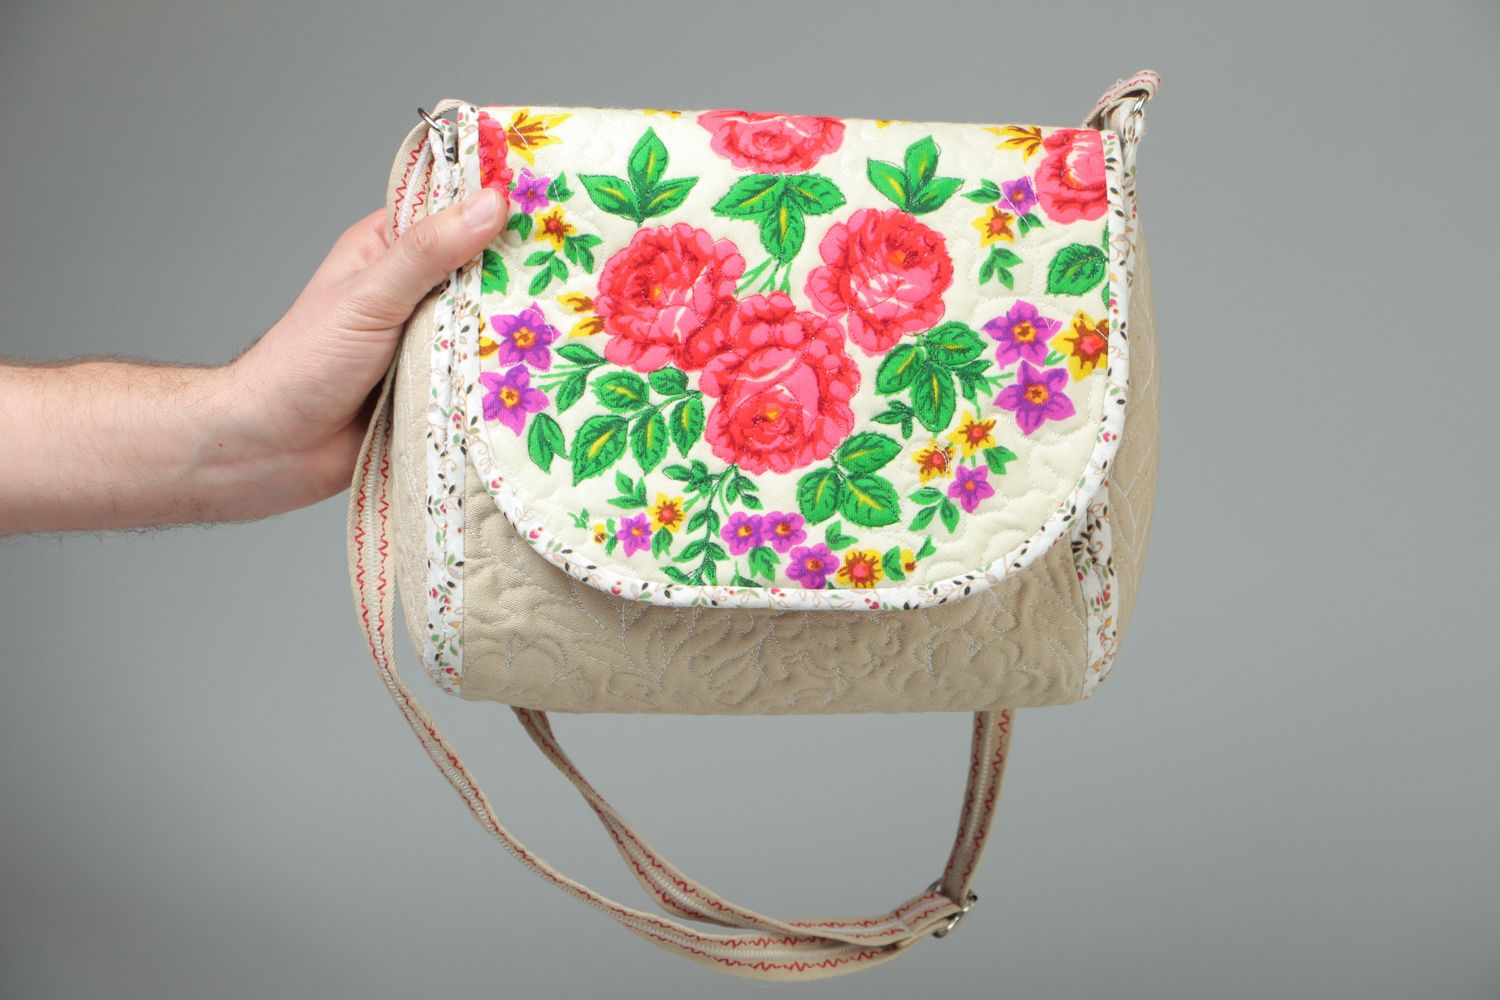 Textil Tasche mit Blumenprint foto 4